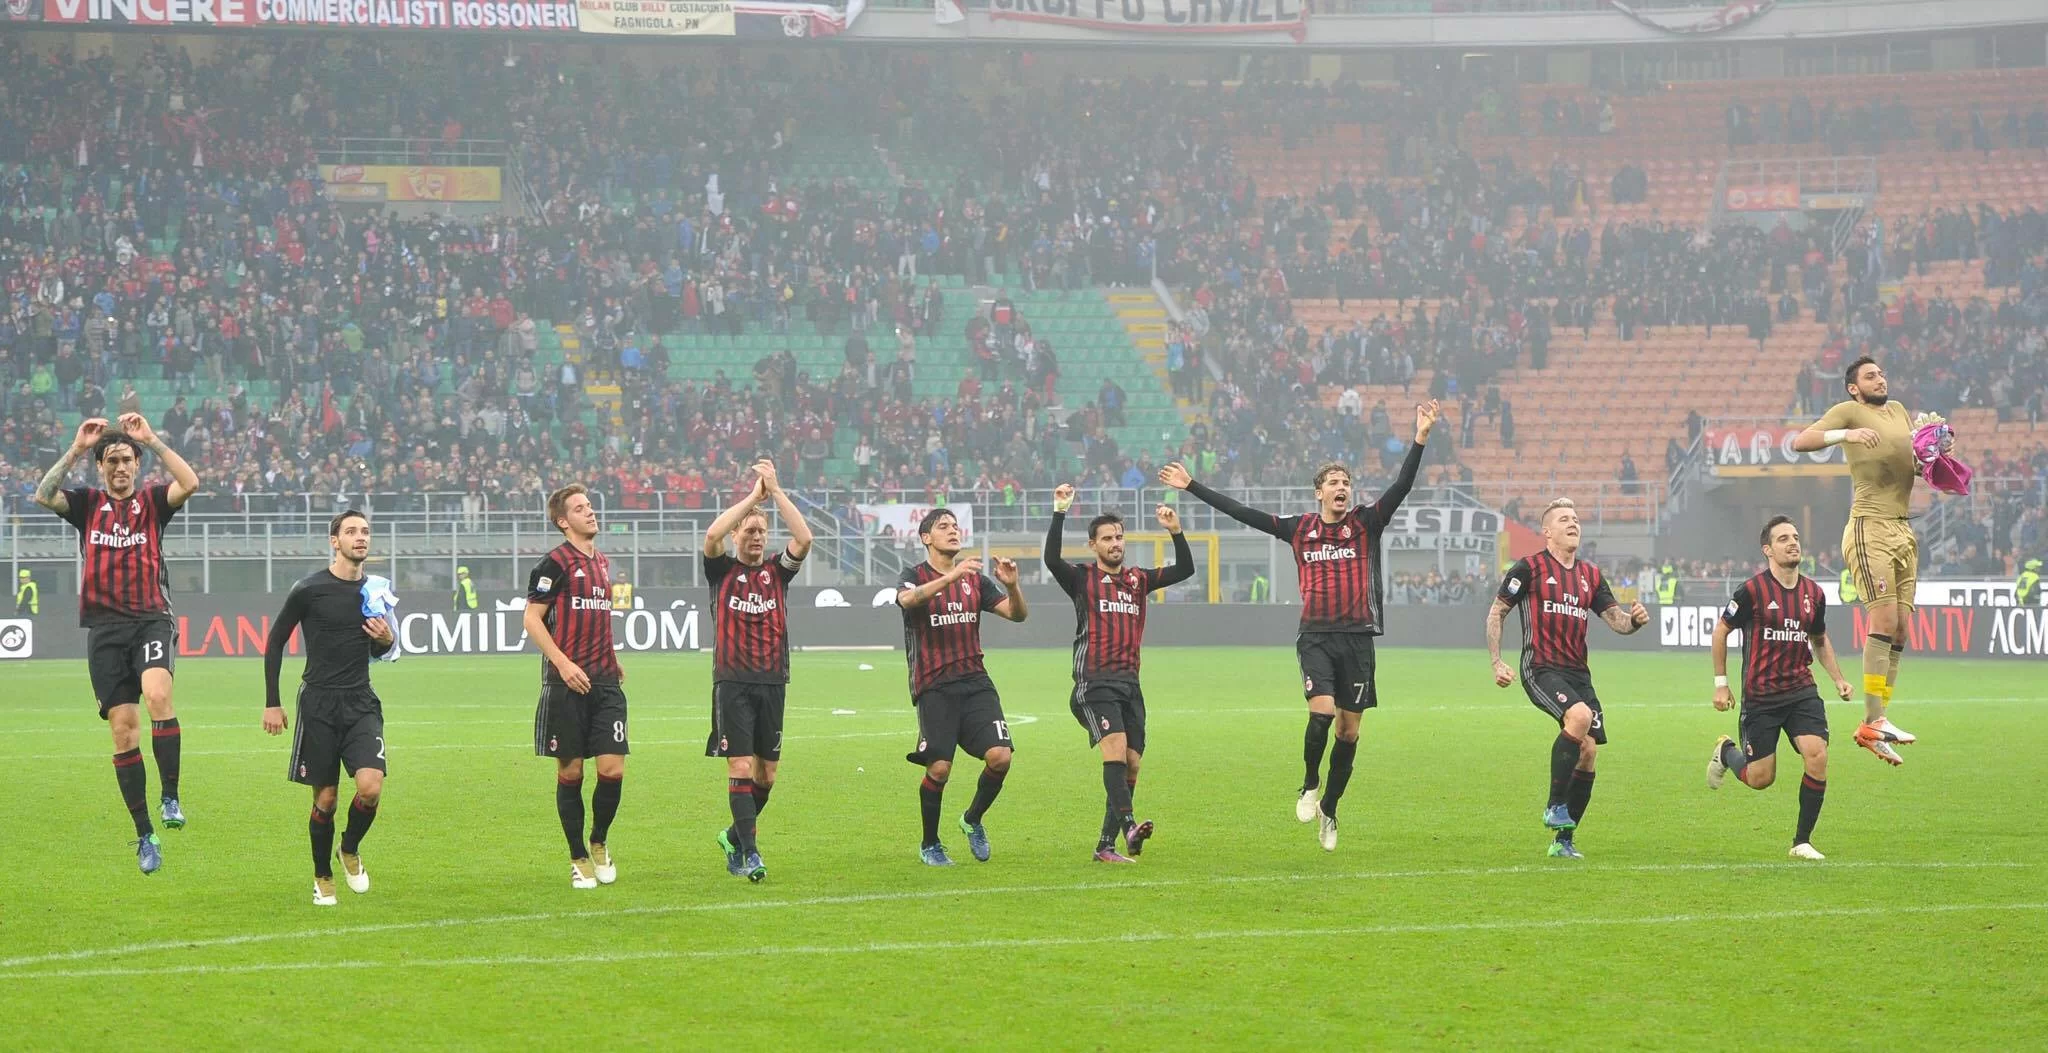 Milan-Pescara: settimo gol dei rossoneri con un tiro da fuori